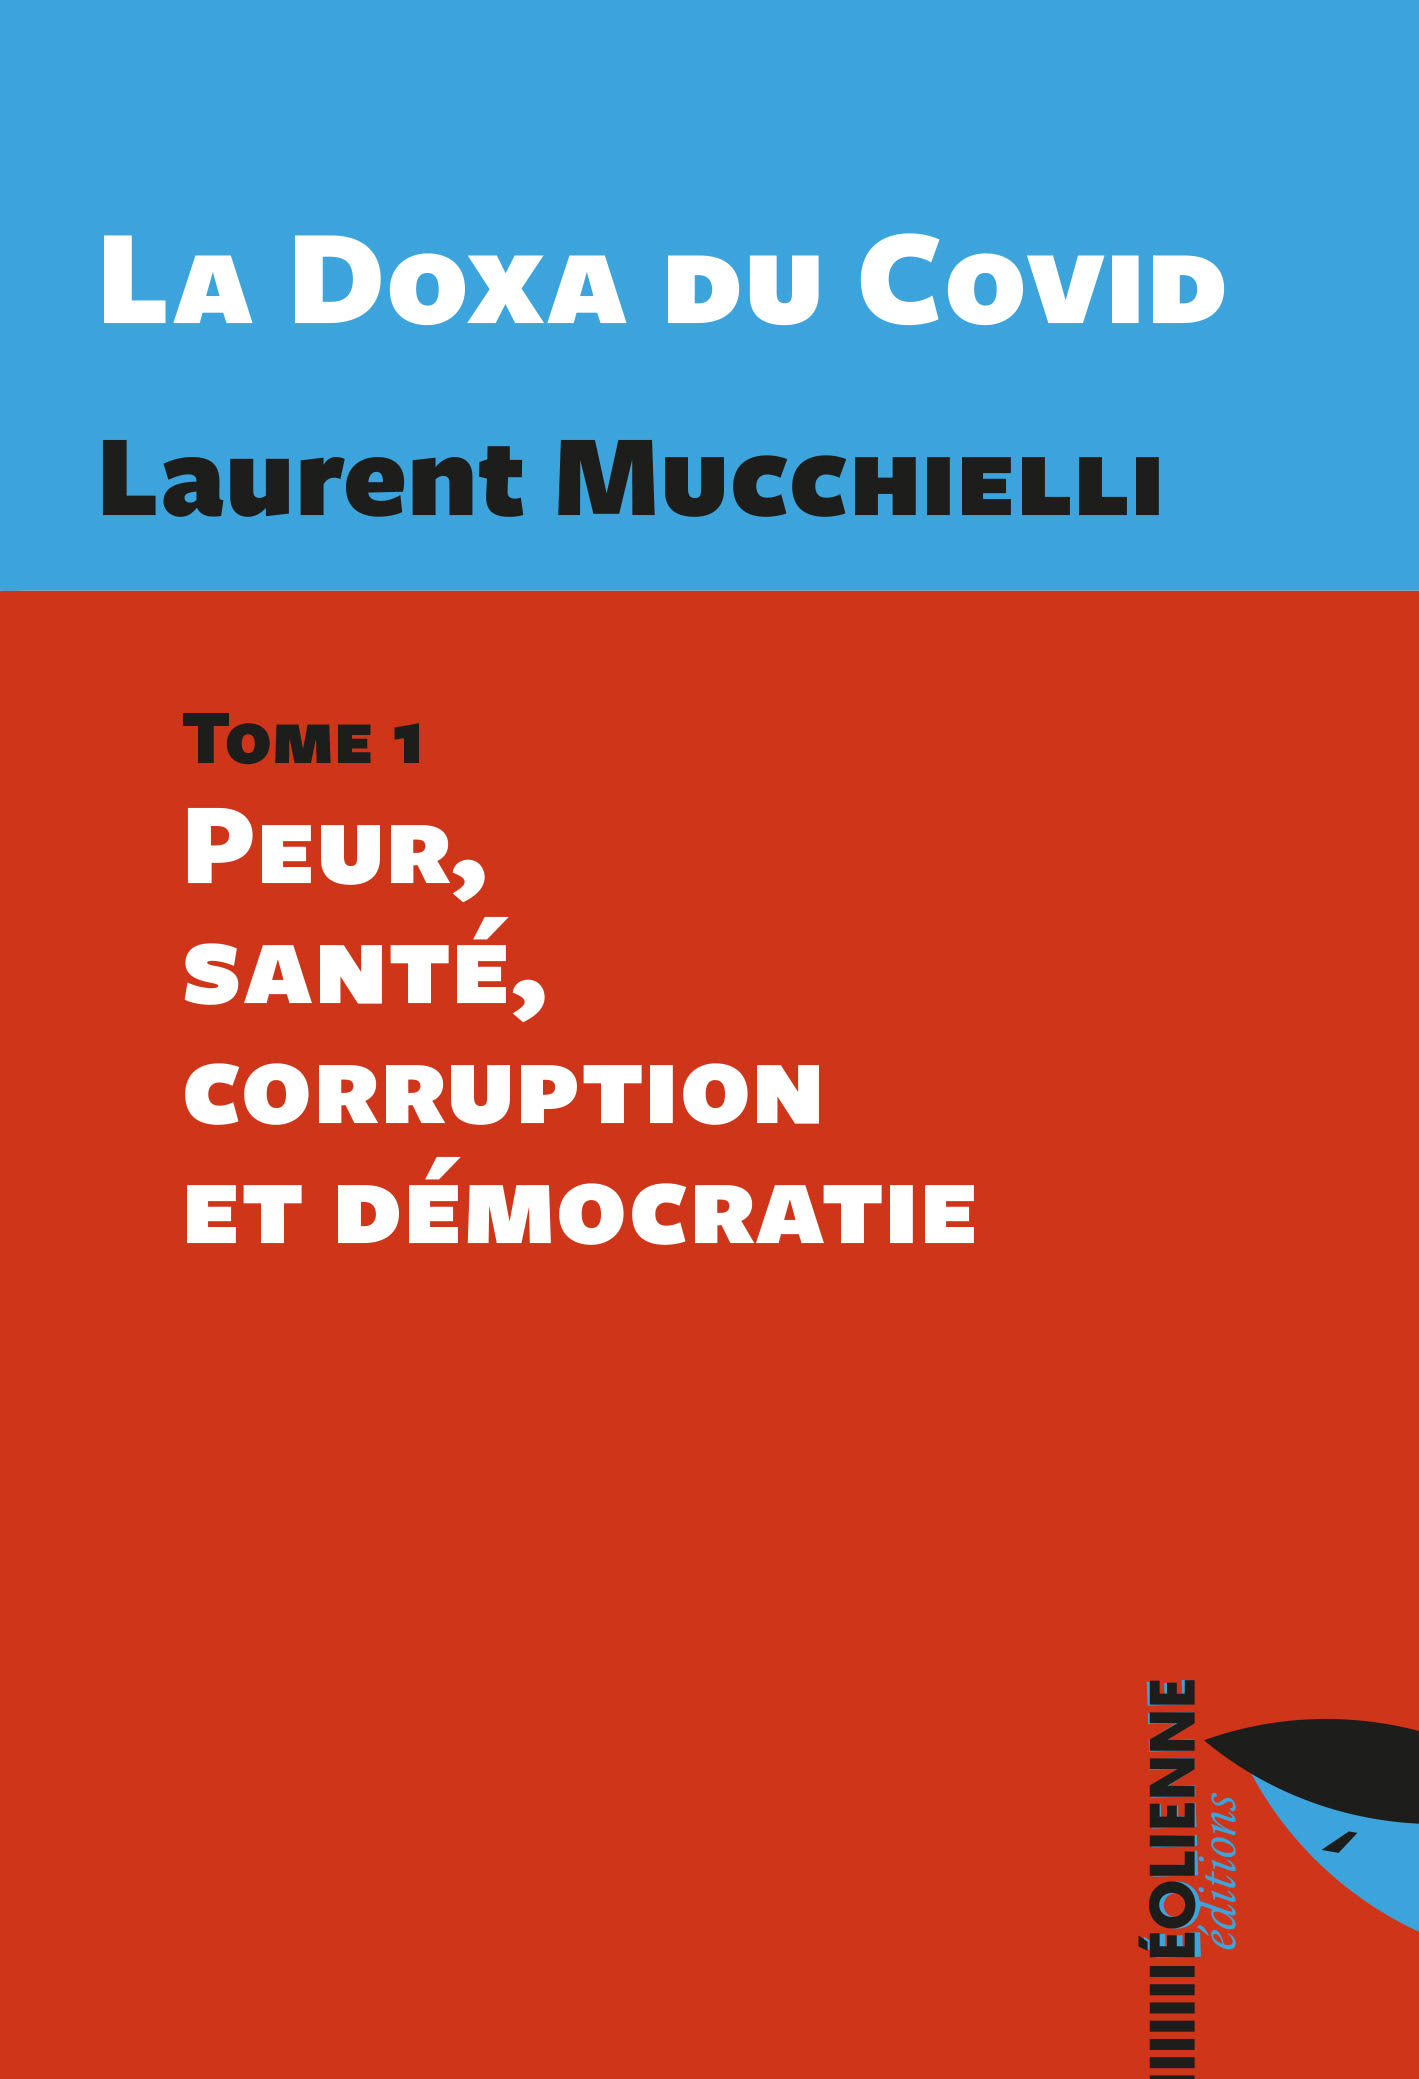 « La Doxa du Covid », le dernier livre du chercheur Laurent Mucchielli 